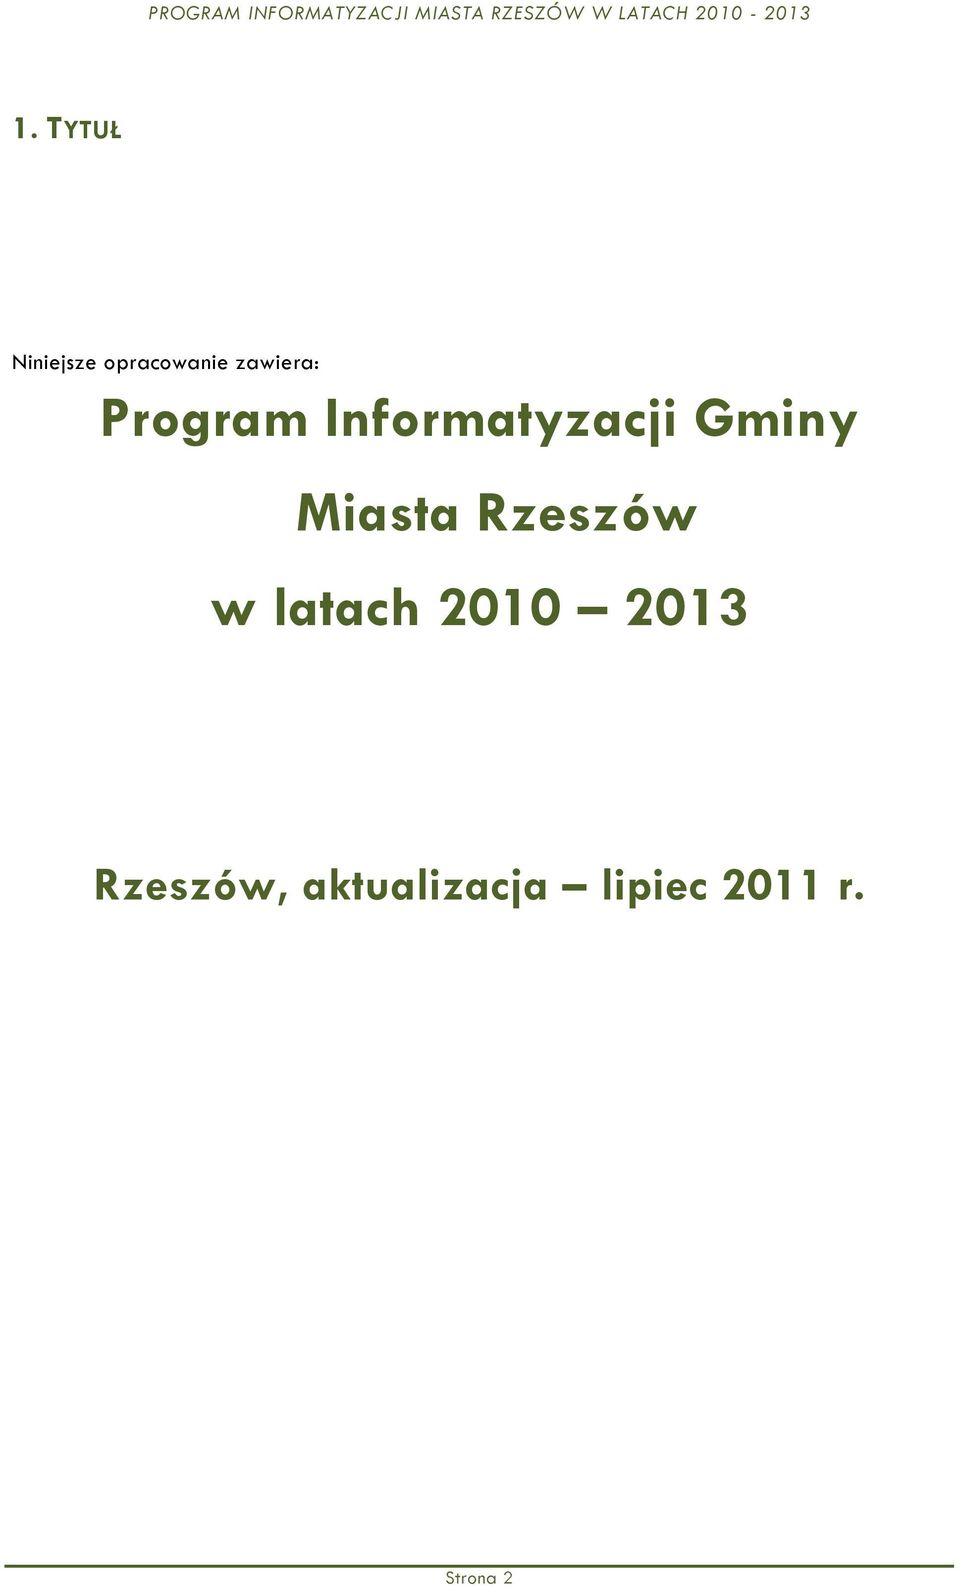 Gminy Miasta Rzeszów w latach 2010